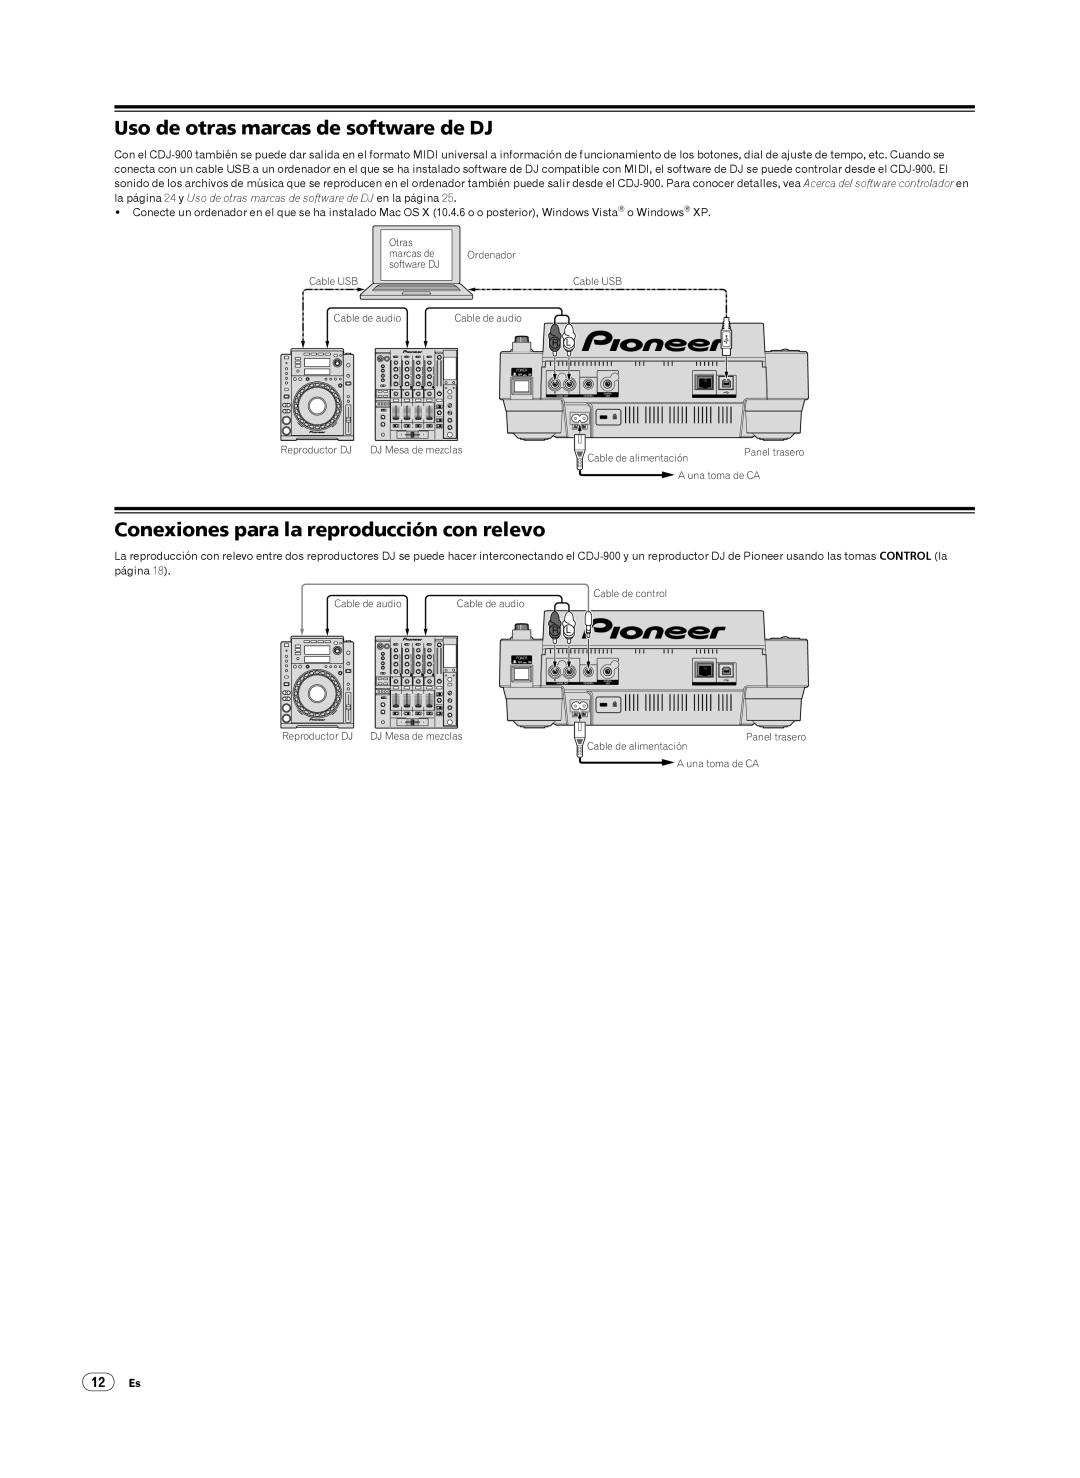 Pioneer CDJ-900, Multi Player Uso de otras marcas de software de DJ, Conexiones para la reproducción con relevo, 12Es 